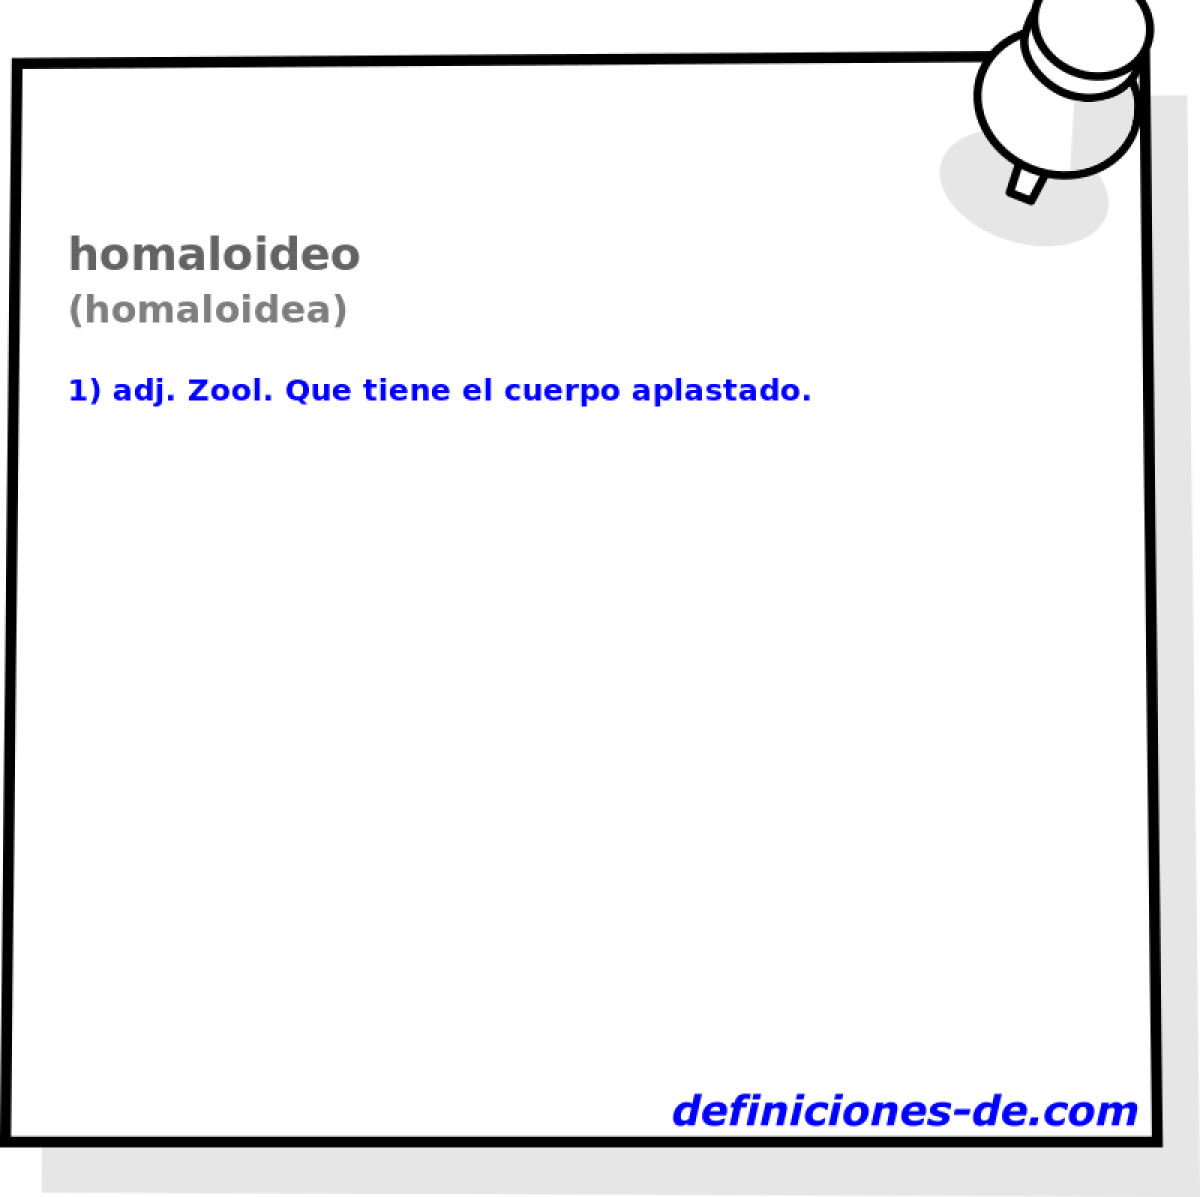 homaloideo (homaloidea)